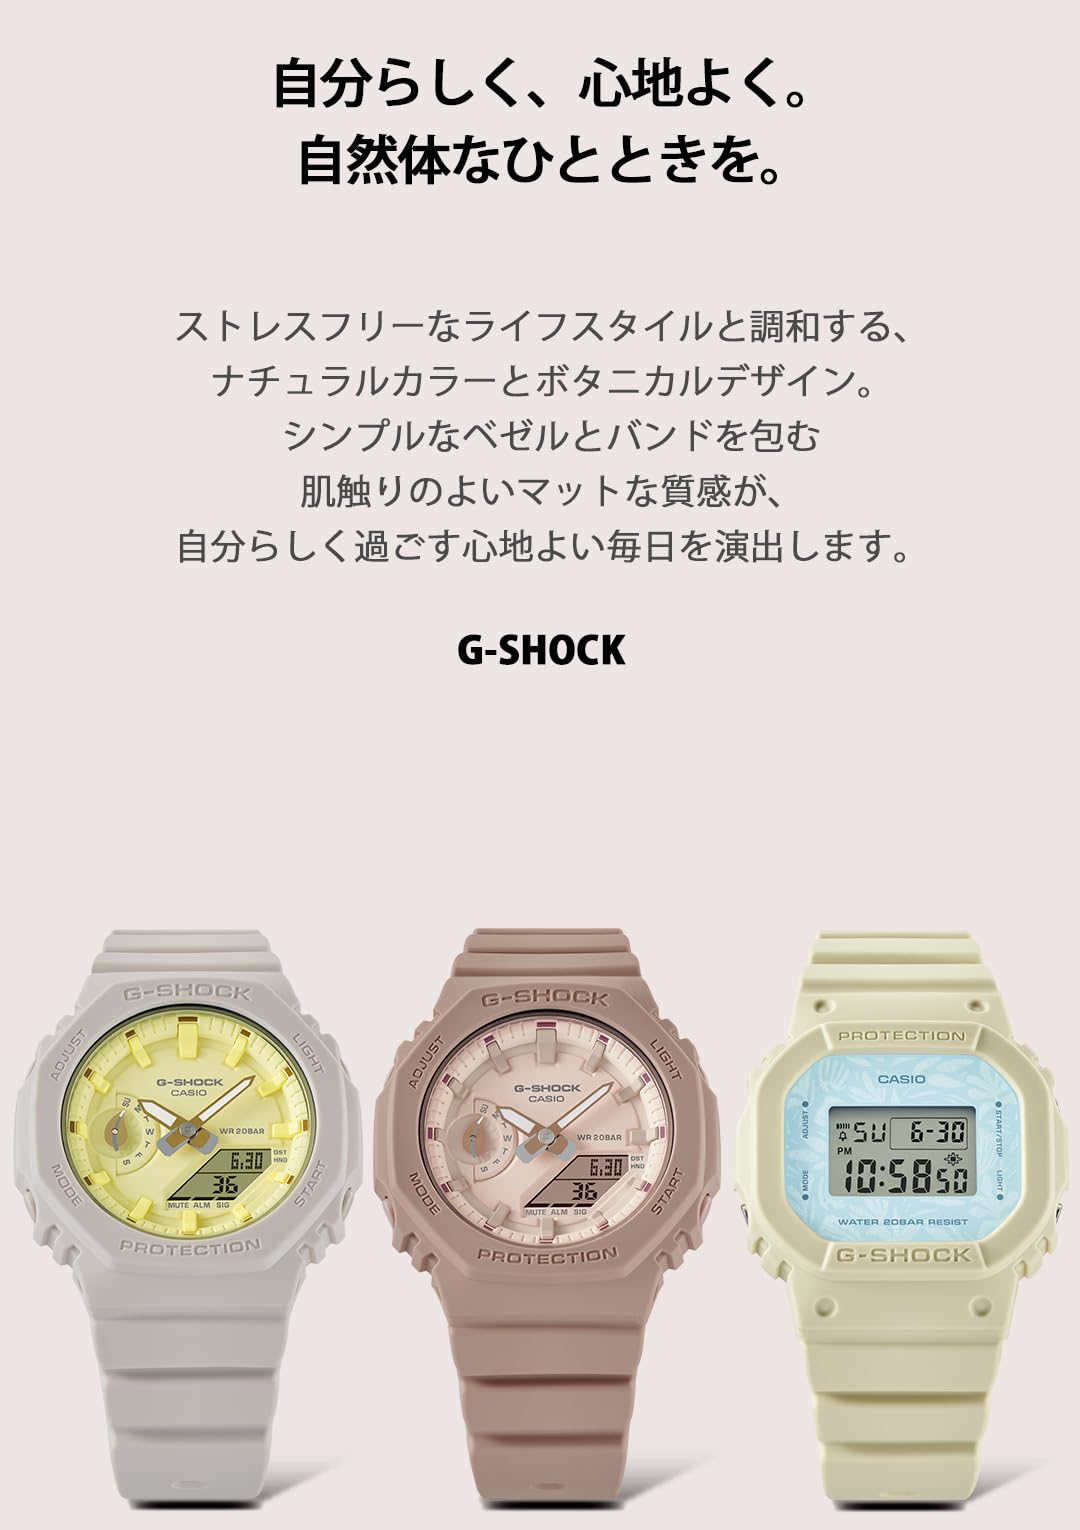 ジーショック [カシオ] 腕時計 【国内正規品】ミッドサイズモデル バイオマスプラスチック採用 GMA-S2100NC-4A2JF レディース ベージュ×ピンク - BanzaiHobby